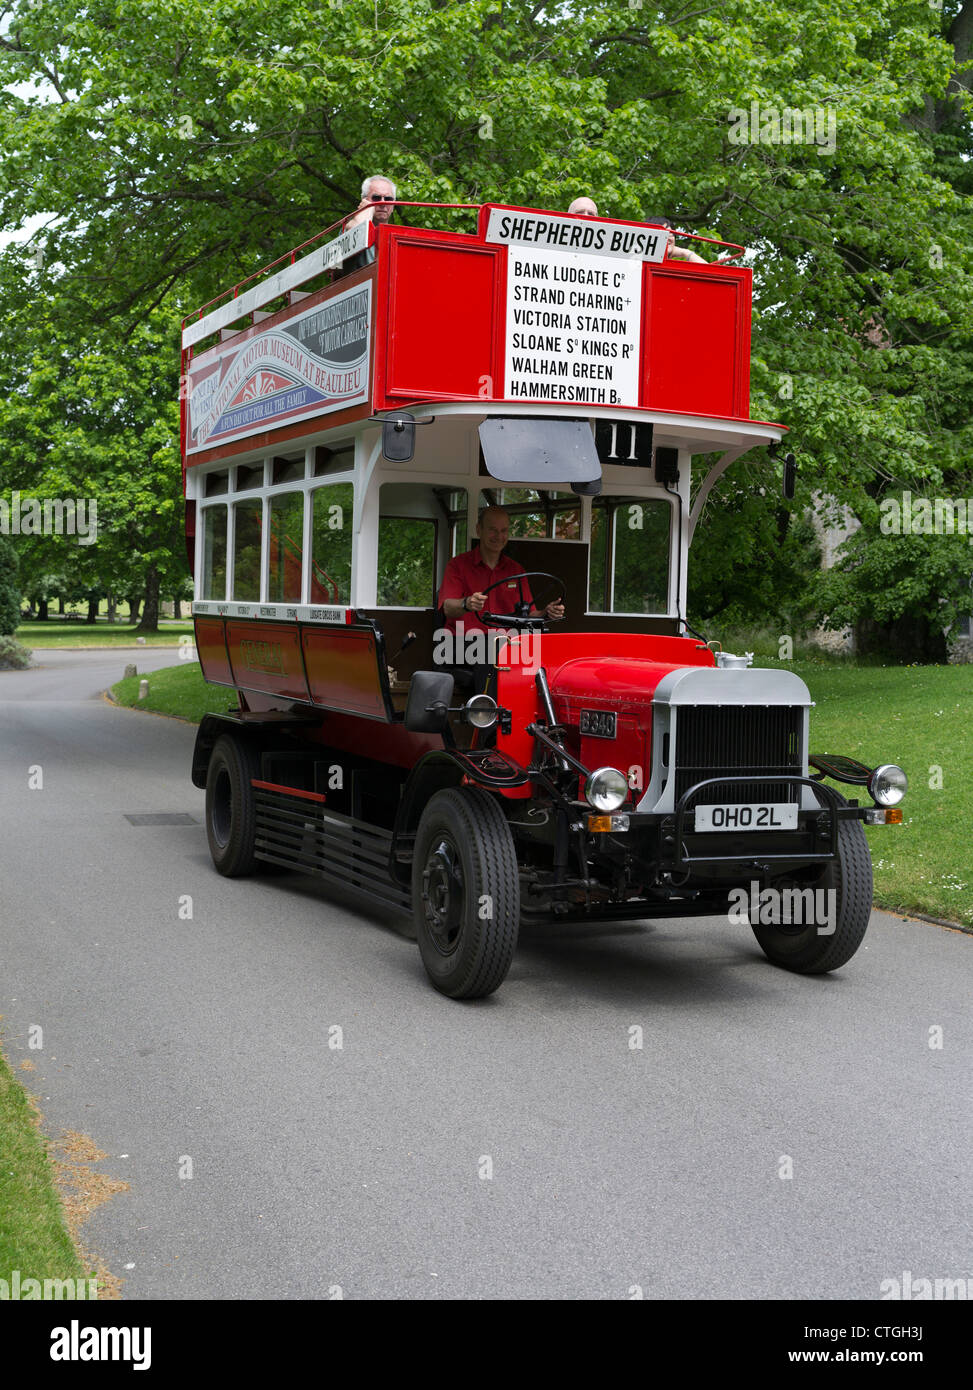 dh Musée national de l'automobile BEAULIEU HAMPSHIRE réplique d'autobus LGC B-Type Bus londonien d'époque B340, bus omnibus des musées aériens du royaume-uni Banque D'Images